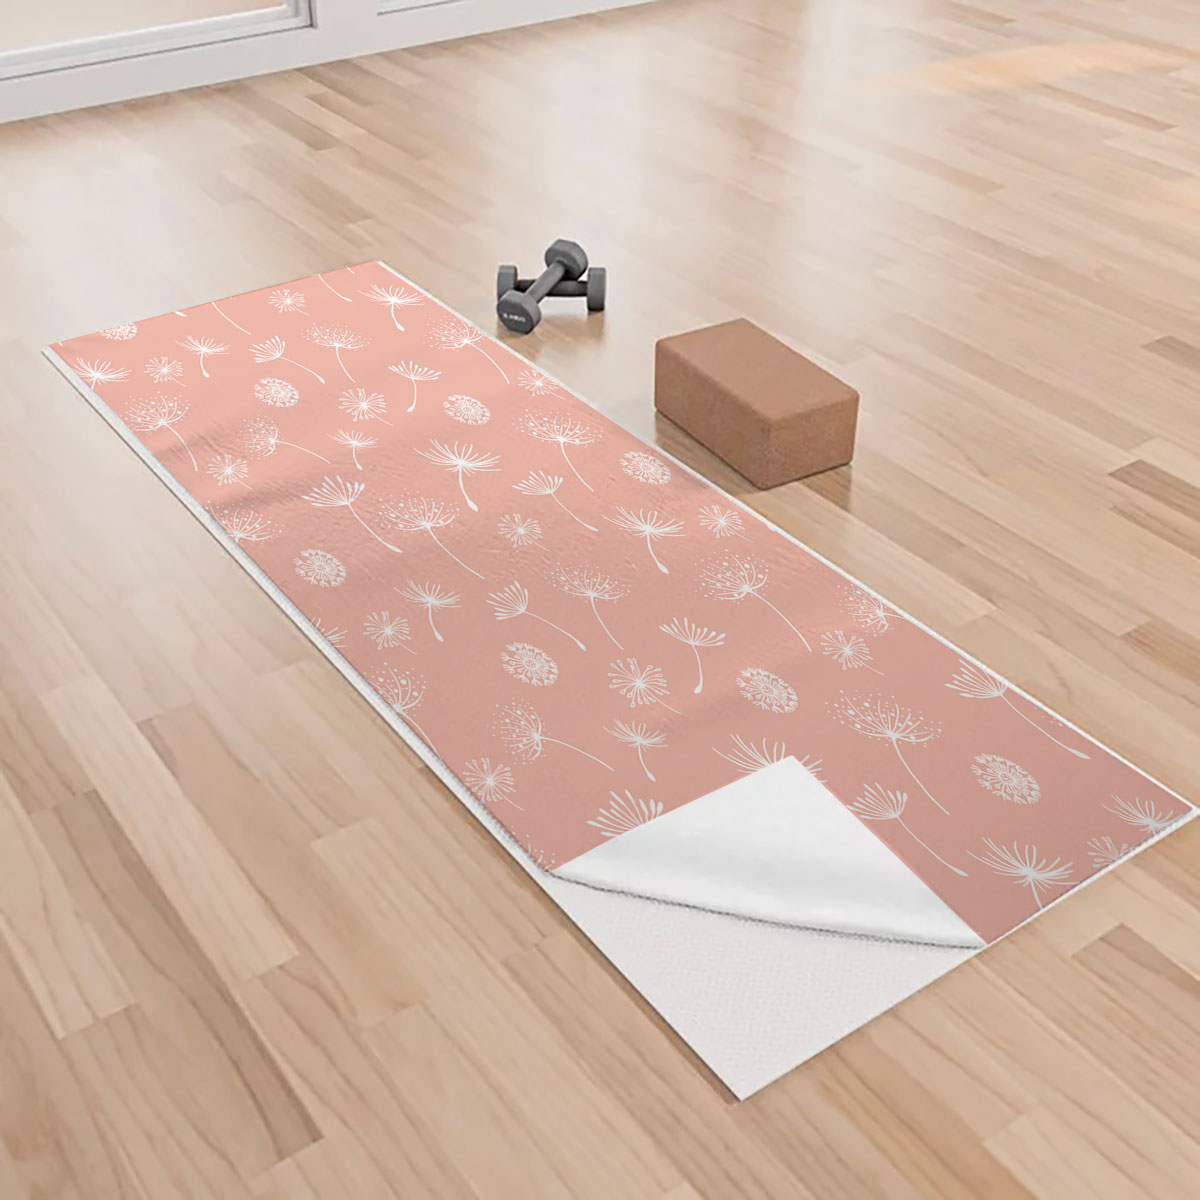 Dandelion On Pink  Background Yoga Towels